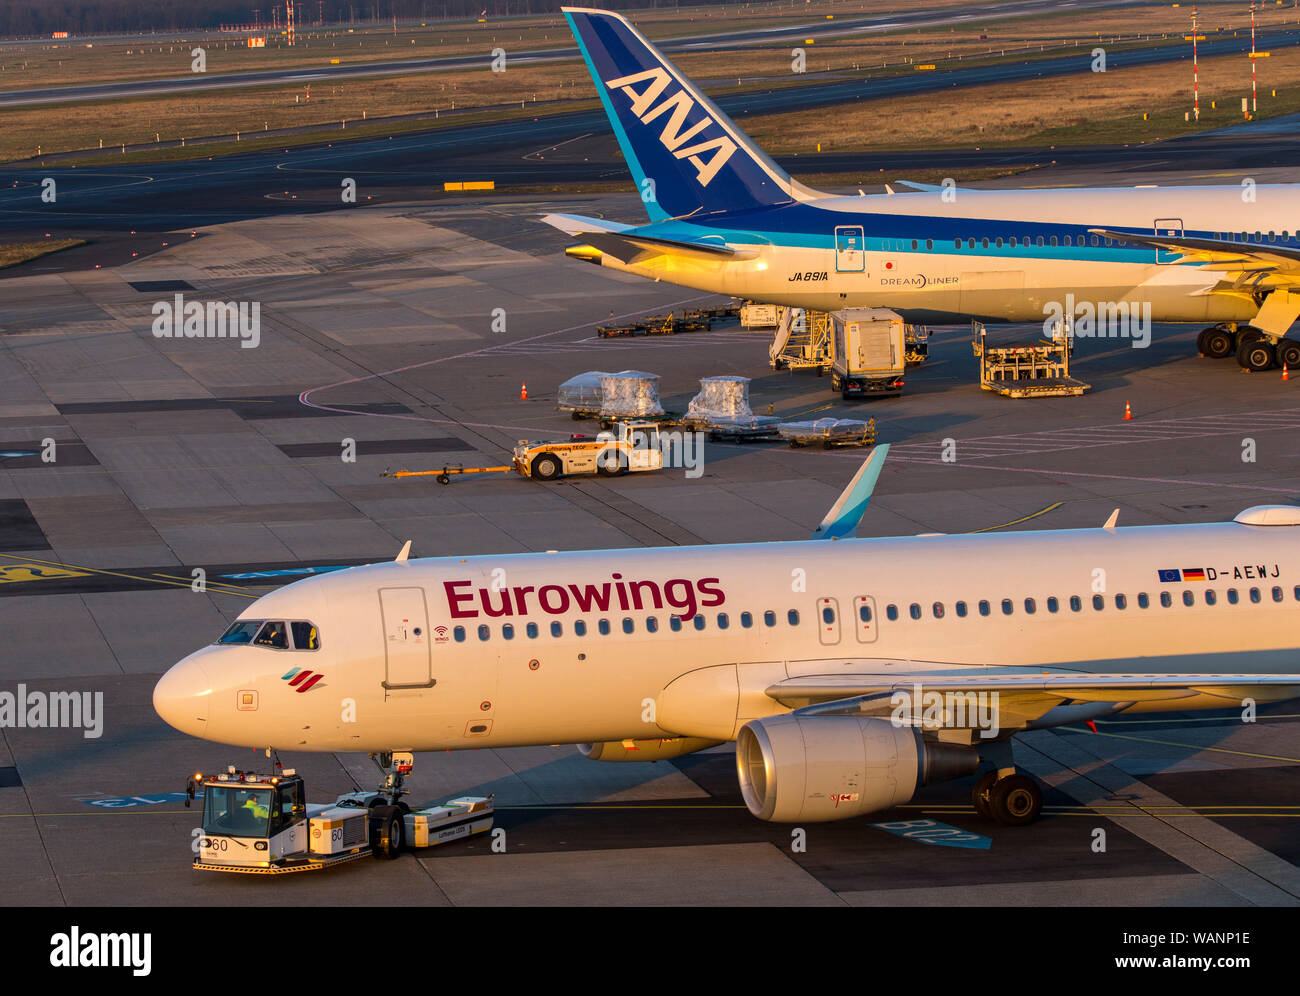 Der Flughafen Düsseldorf International, Eurowings und ANA Flugzeuge Stockfoto